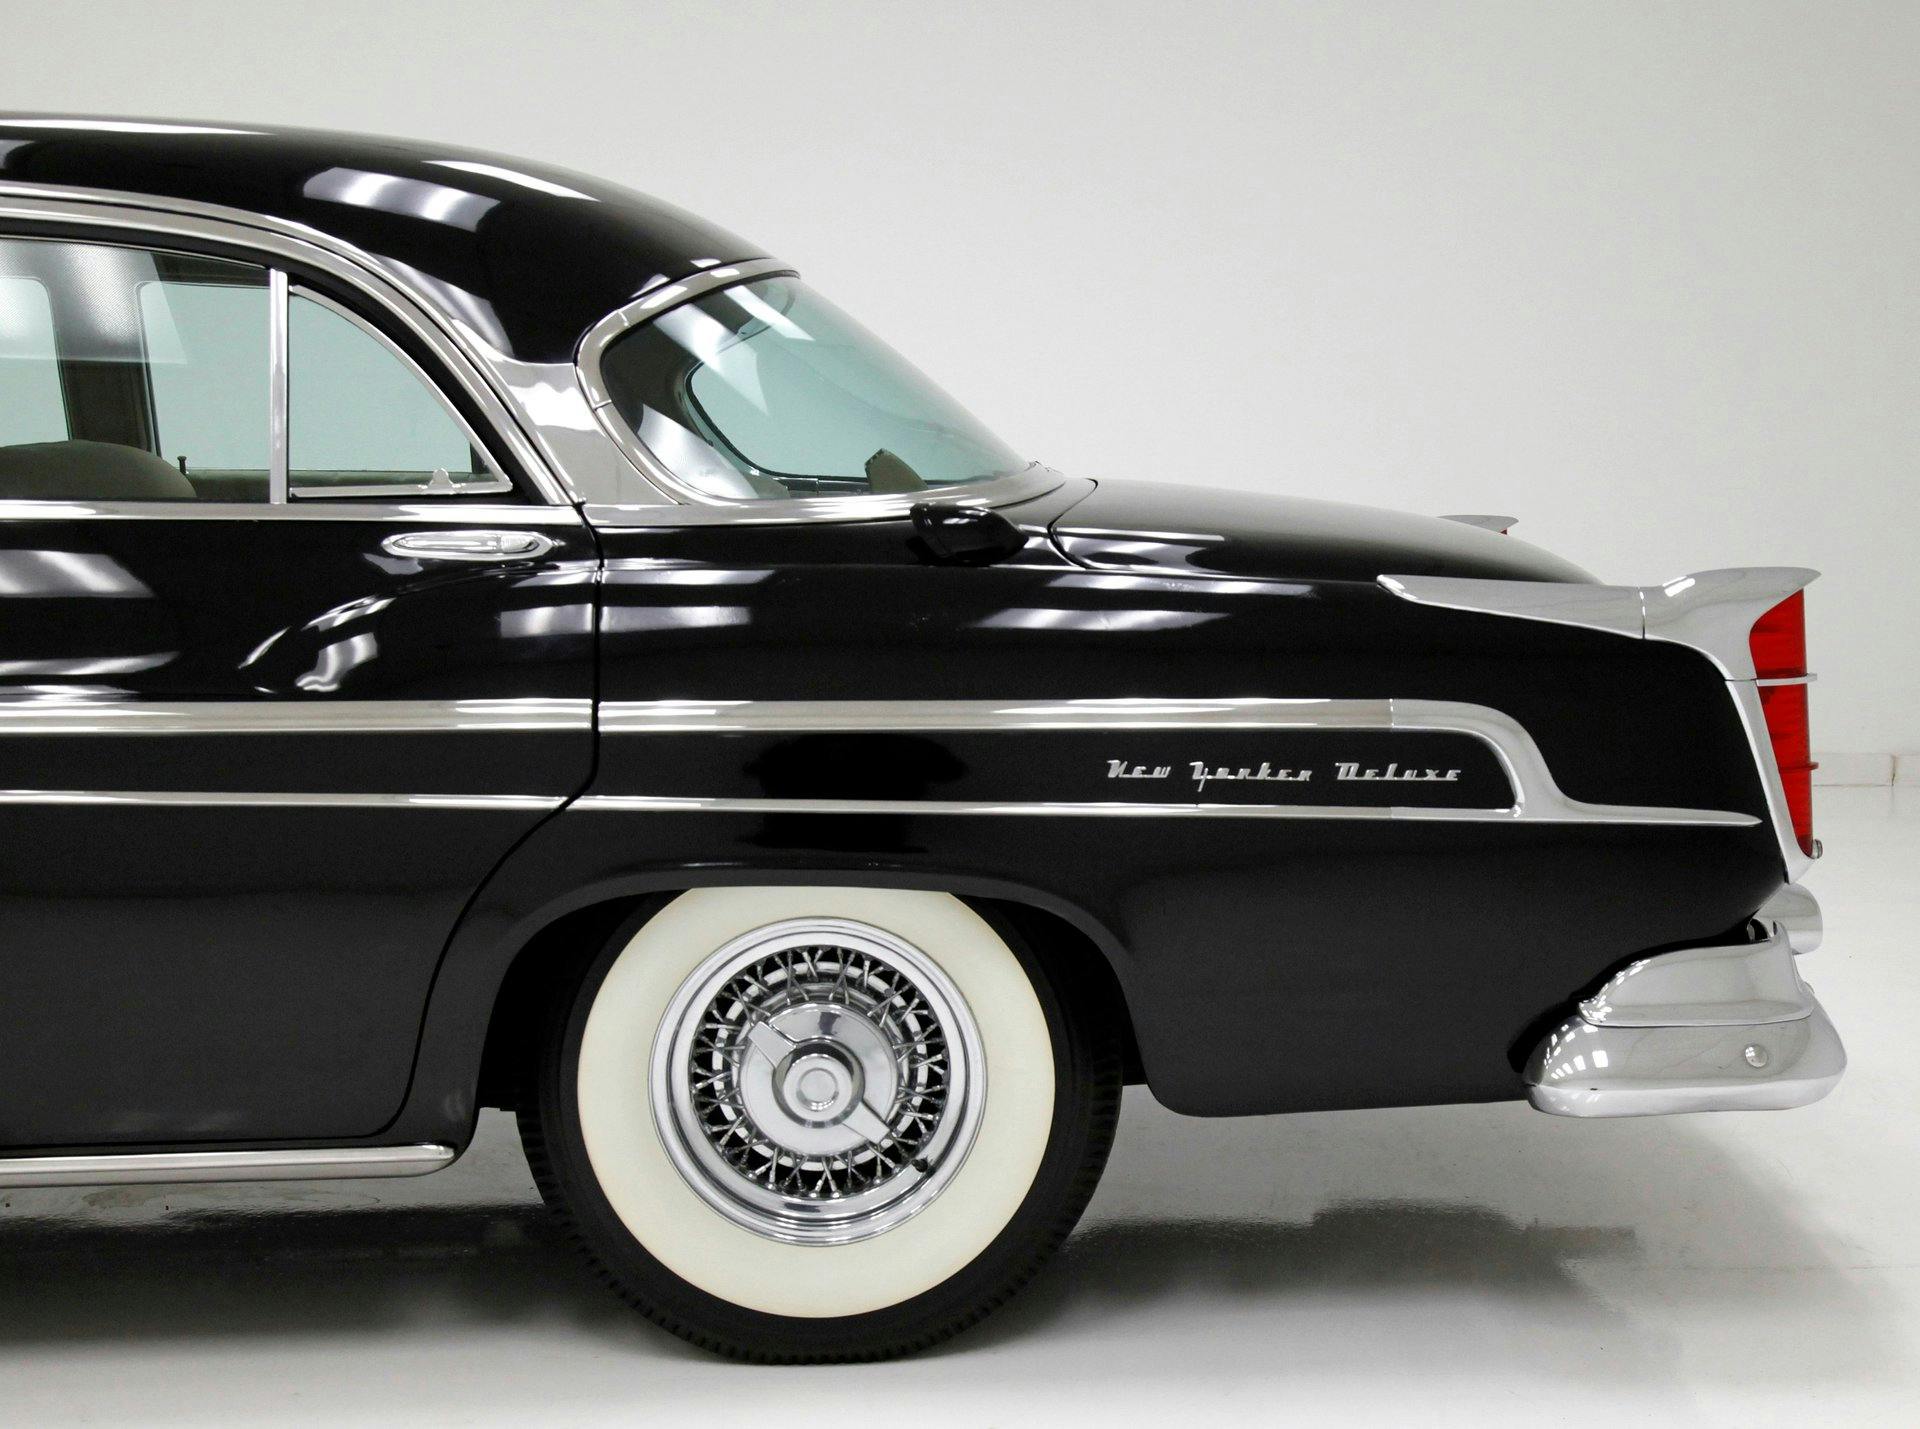 1955 chrysler new yorker harry truman president car